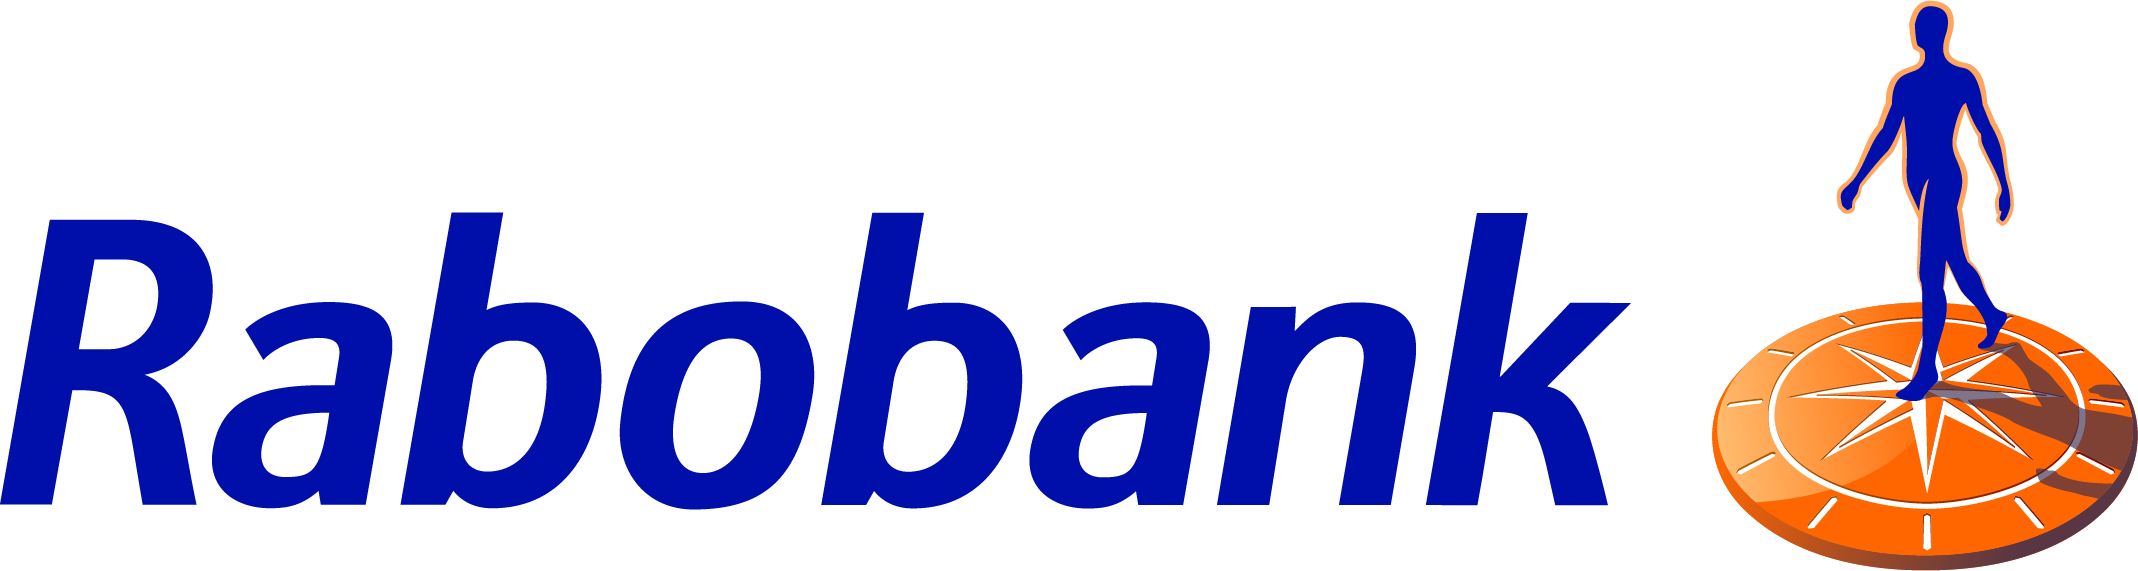 Rabobank Woordmerk Beeldmerk RGB